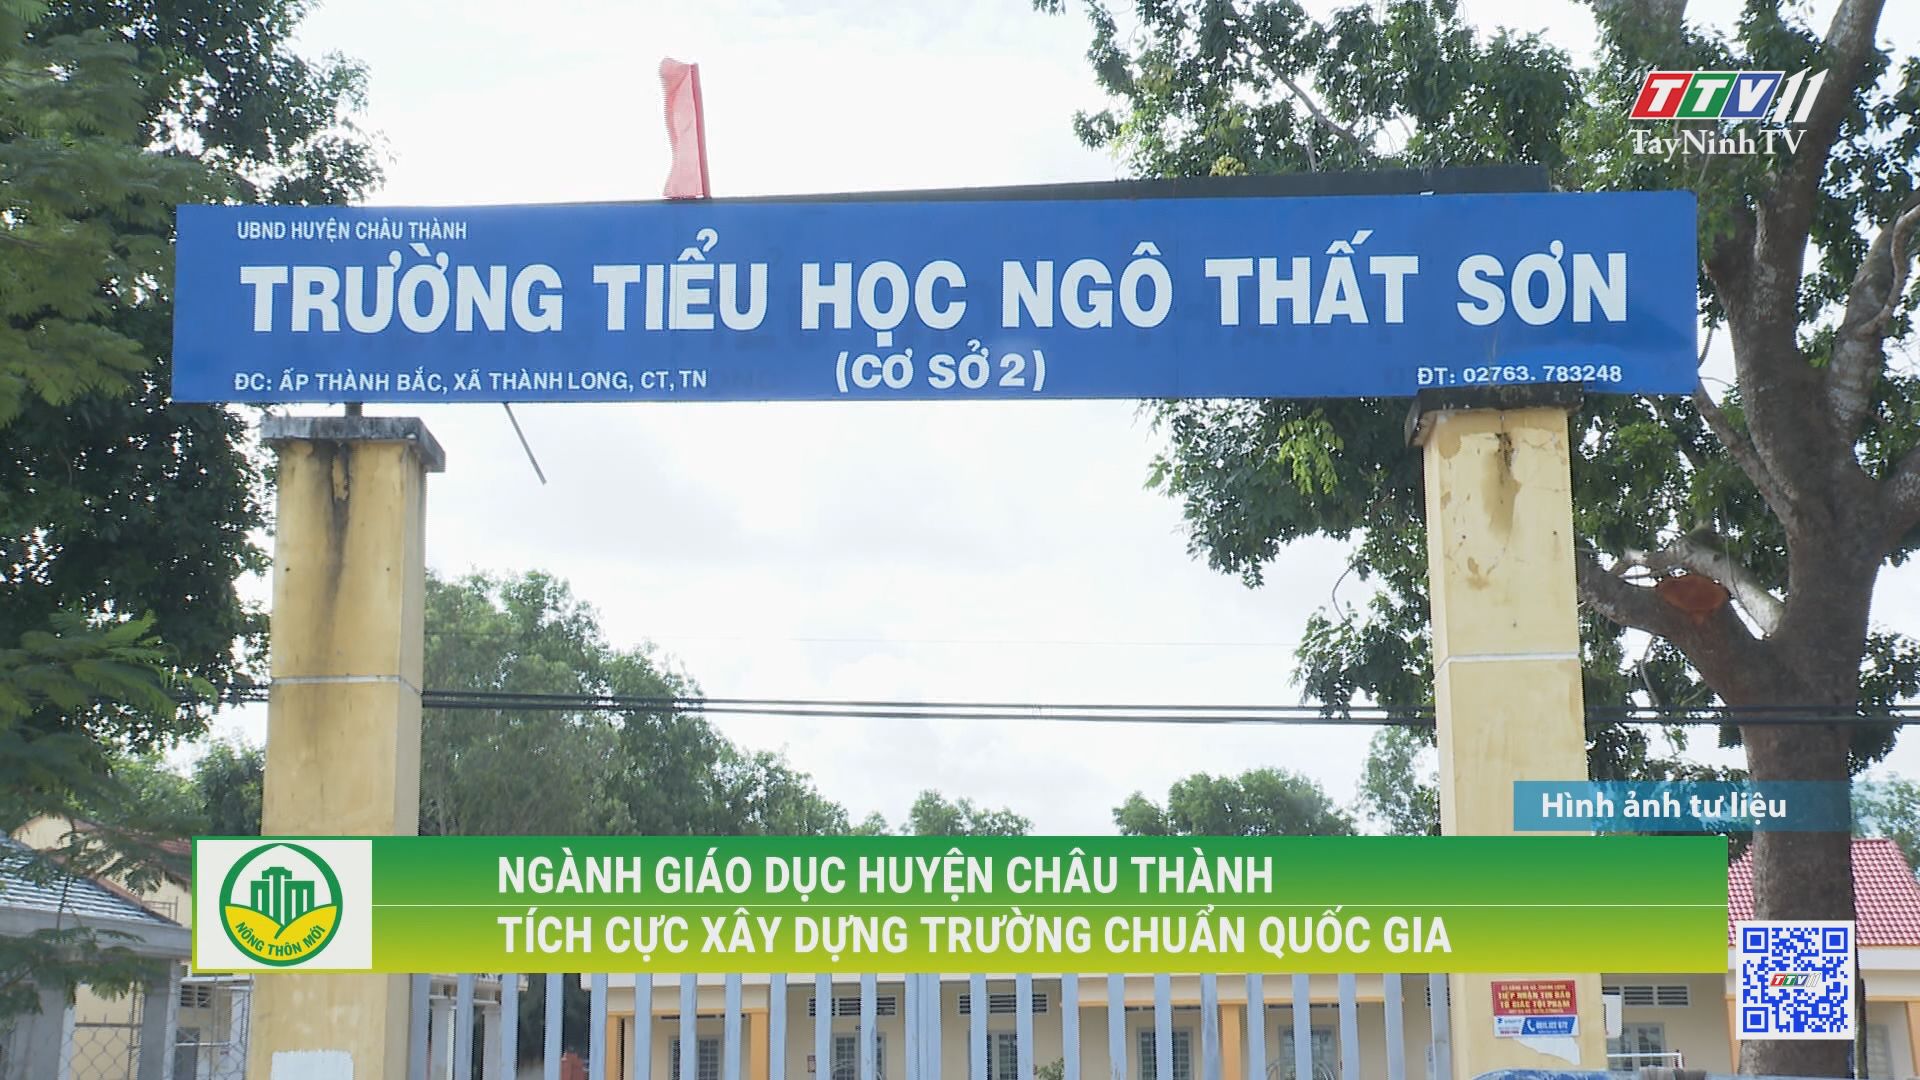 Ngành giáo dục huyện Châu Thành tích cực xây dựng trường chuẩn quốc gia | TÂY NINH XÂY DỰNG NÔNG THÔN MỚI | TayNinhTV